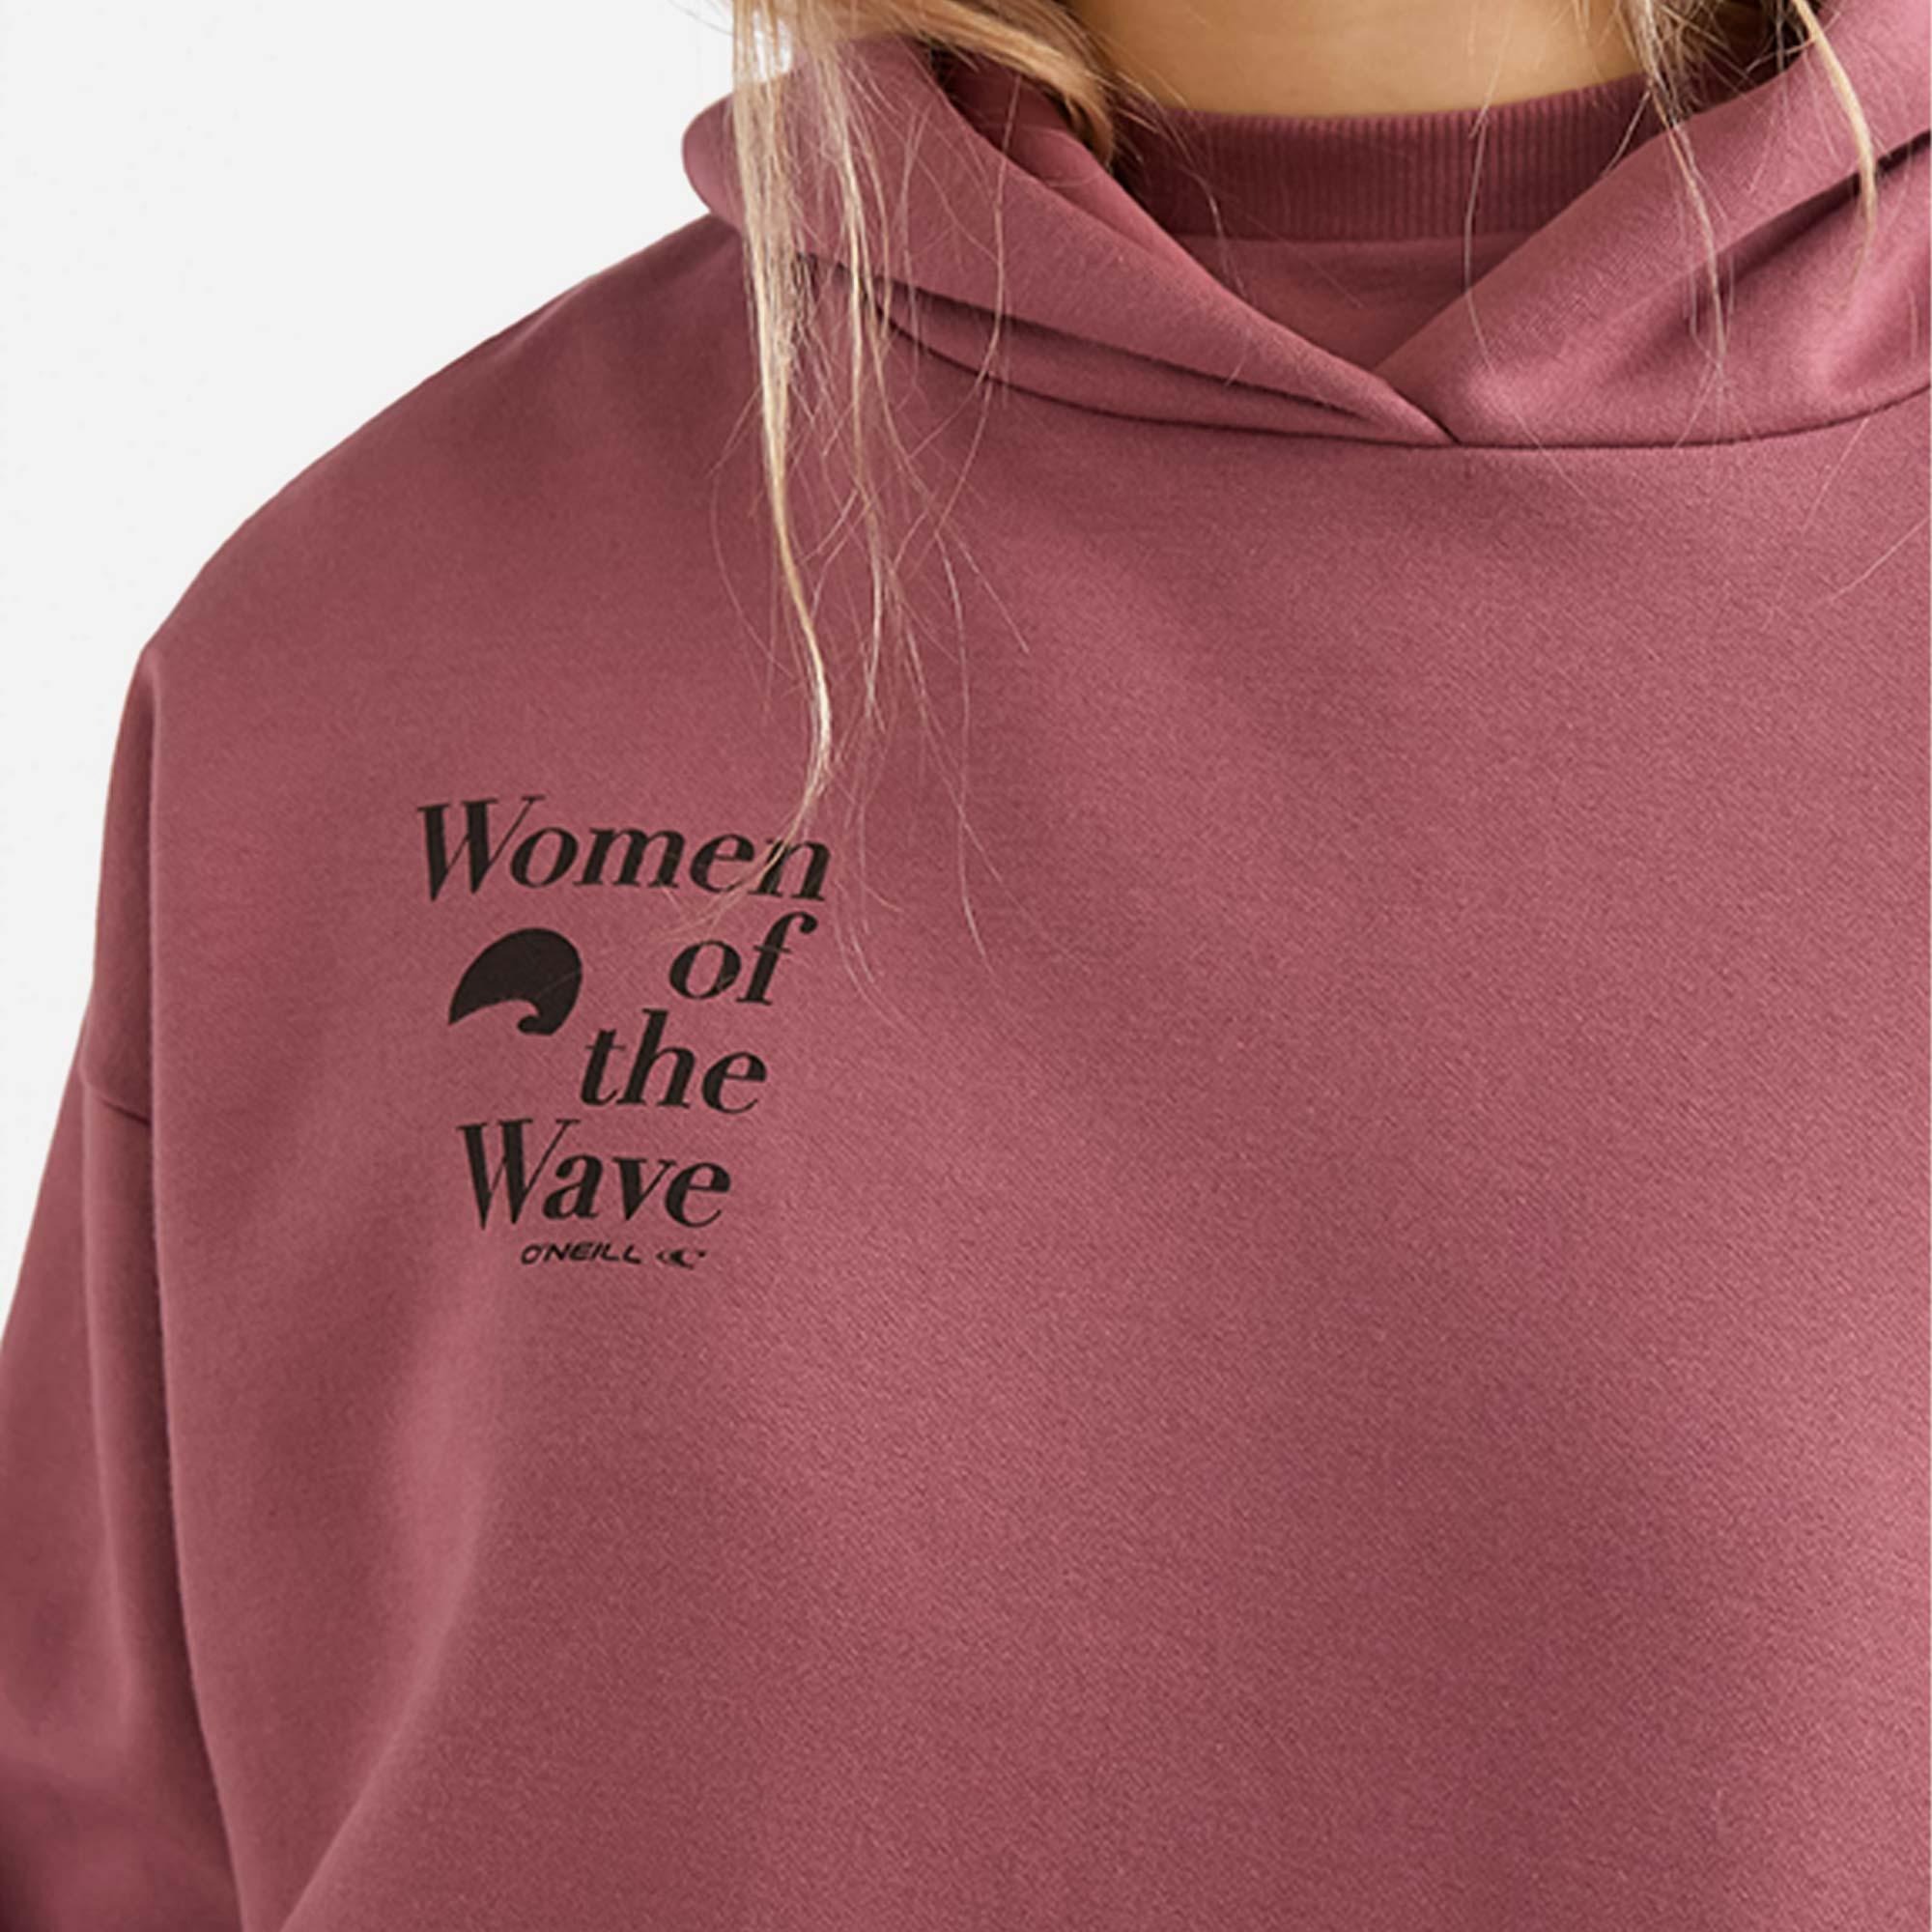 Áo khoác thể thao nữ Oneill Women Of The Wave - 1750033-13013